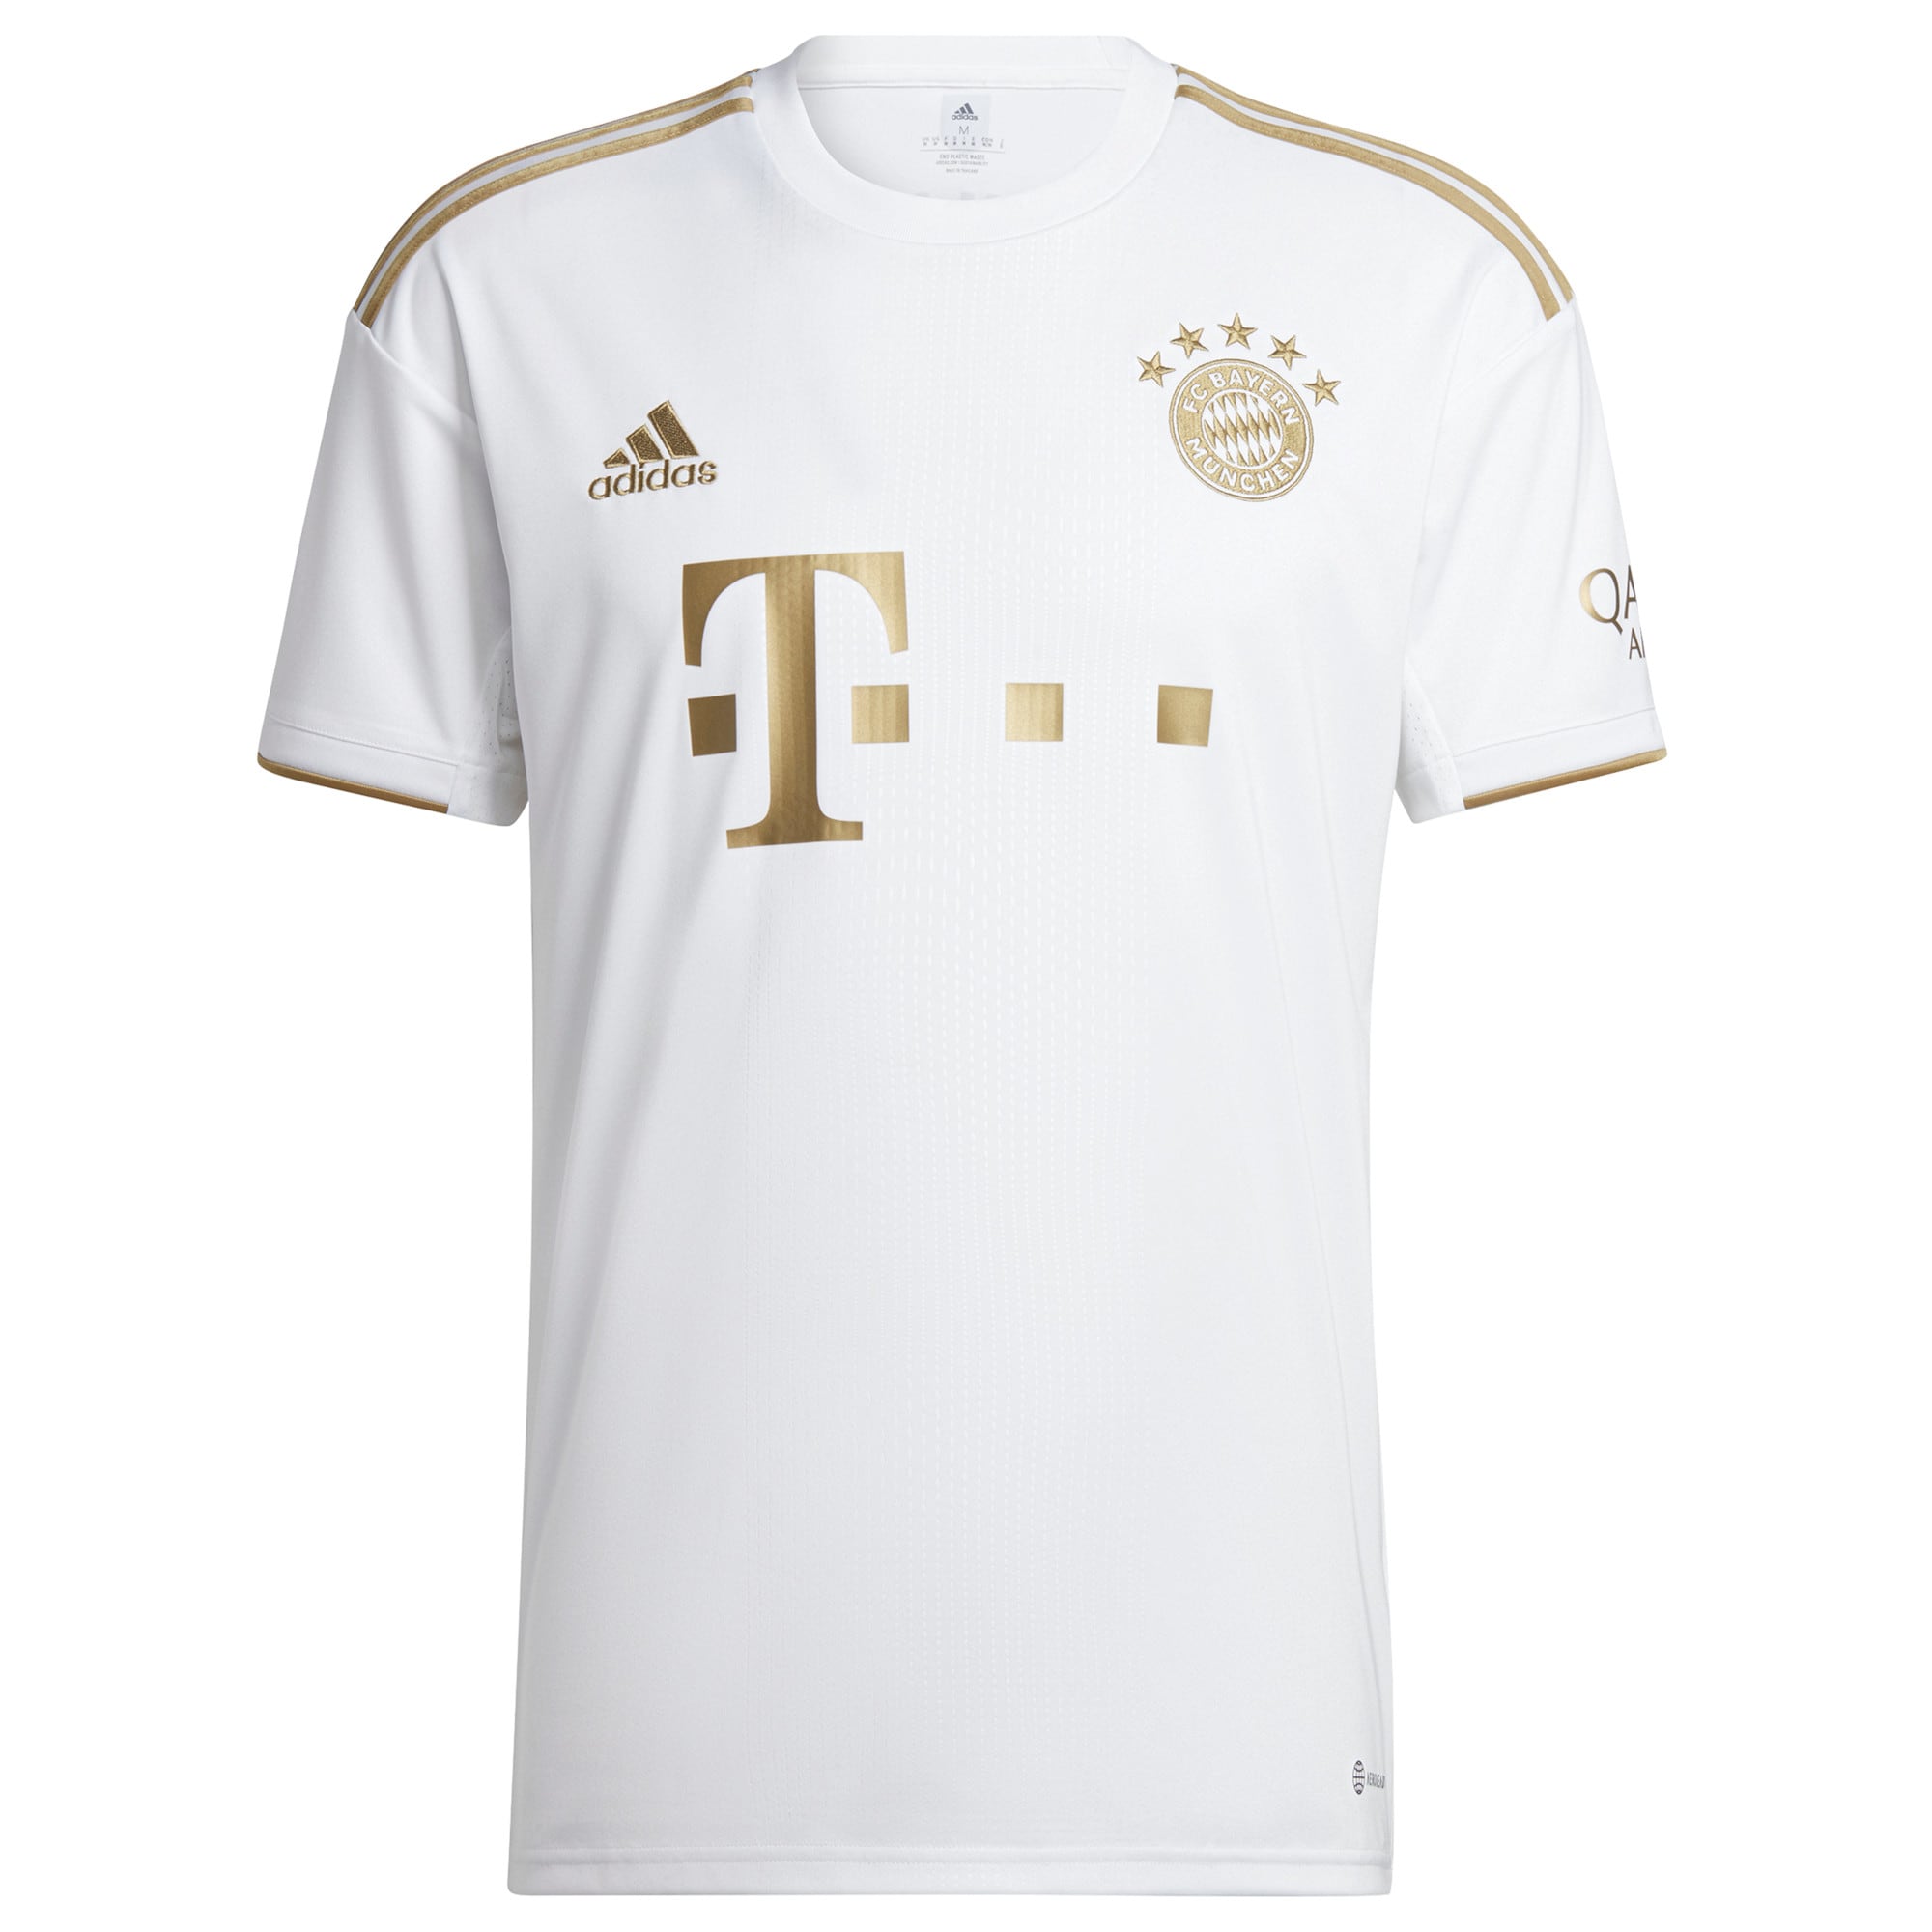 FC Bayern Away Shirt 2022-2023 with Musiala 42 printing